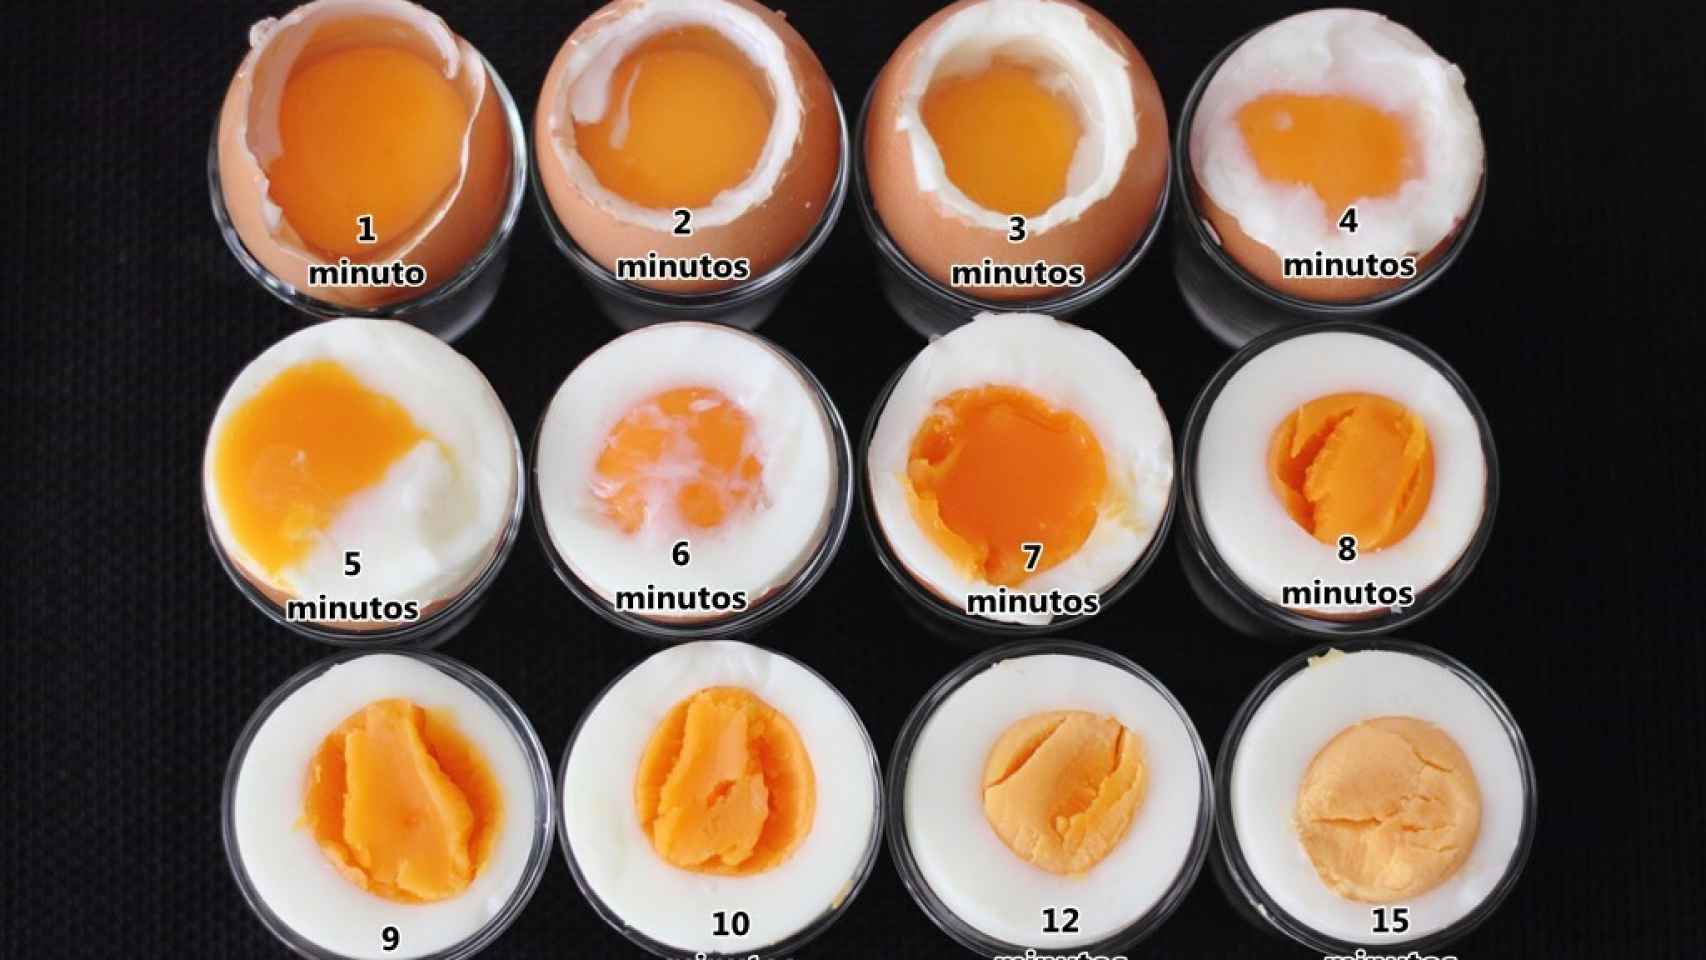 Tiempos de cocción para los huevos duros